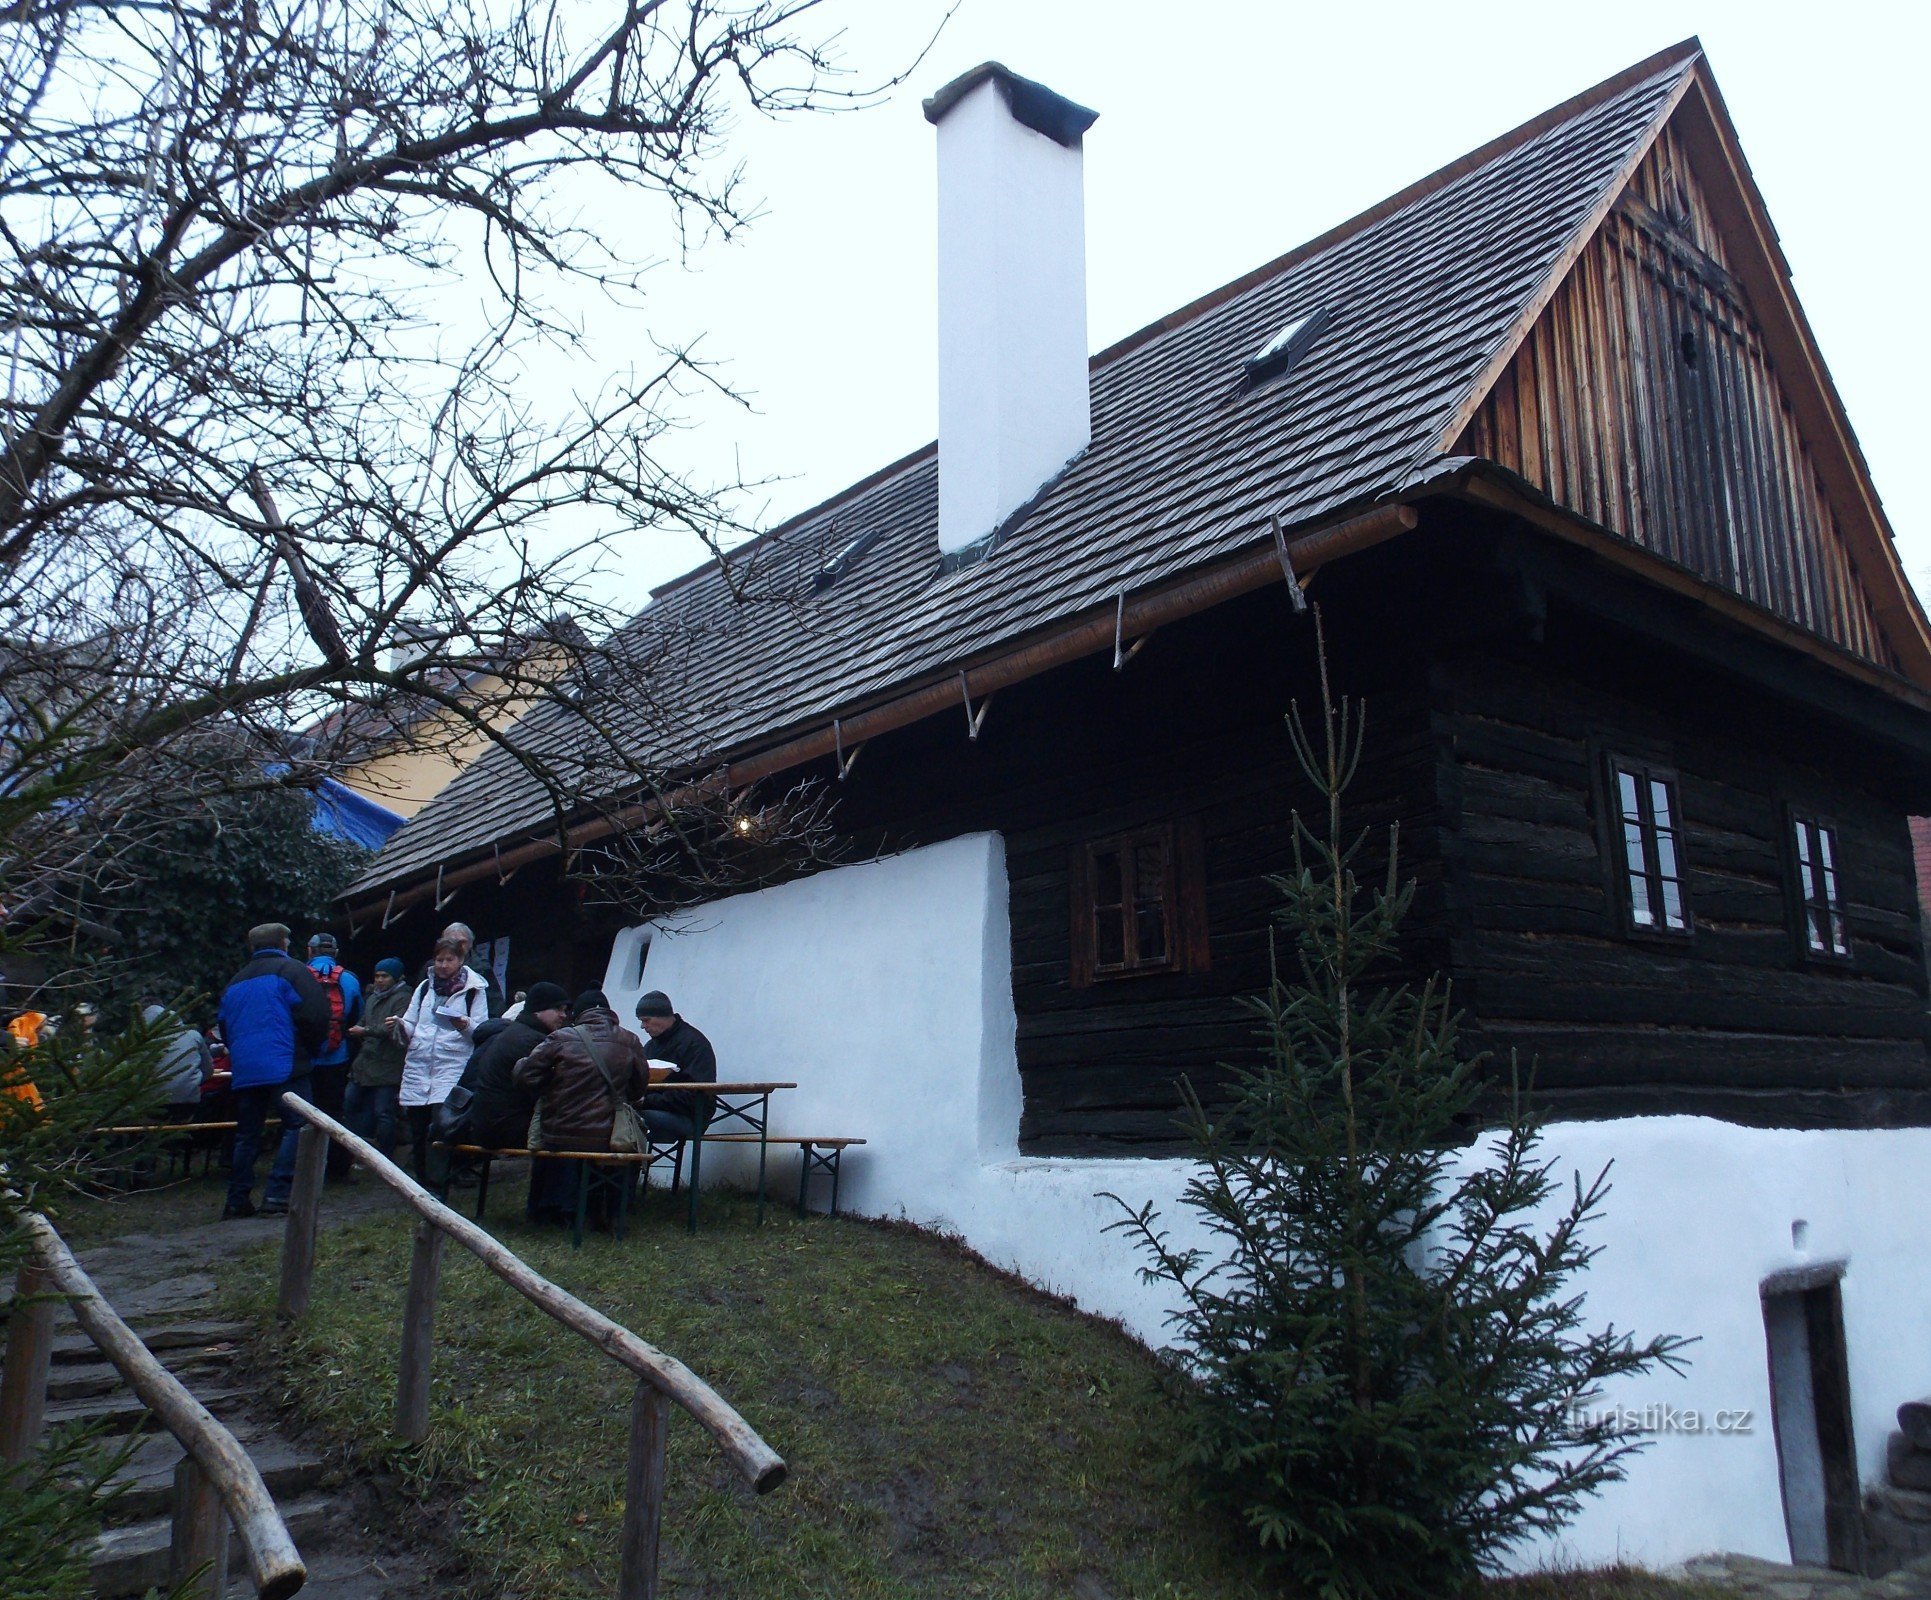 Casas de madeira da Valáquia em Valašské Klobouky